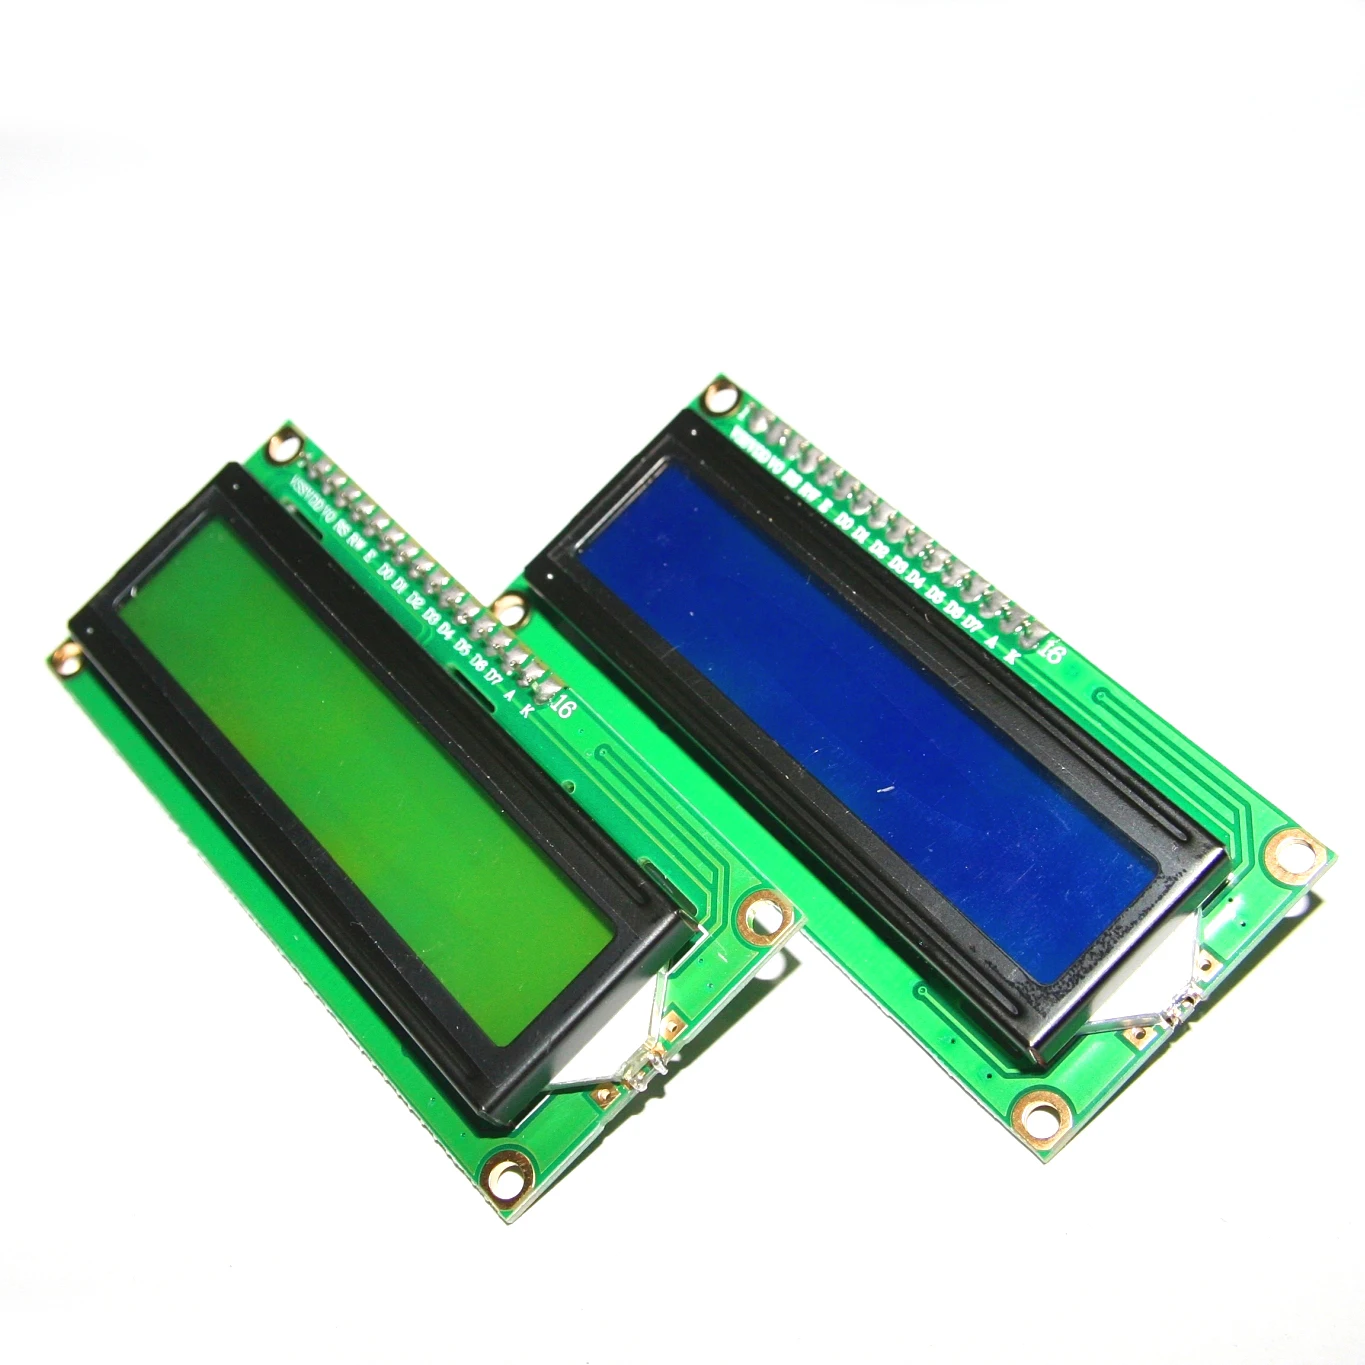 ЖК-дисплей 1602 + I2C ЖК-дисплей 1602 Модуль синий/зеленый экран PCF8574 IIC/I2C ЖК-дисплей 1602 адаптер пластины